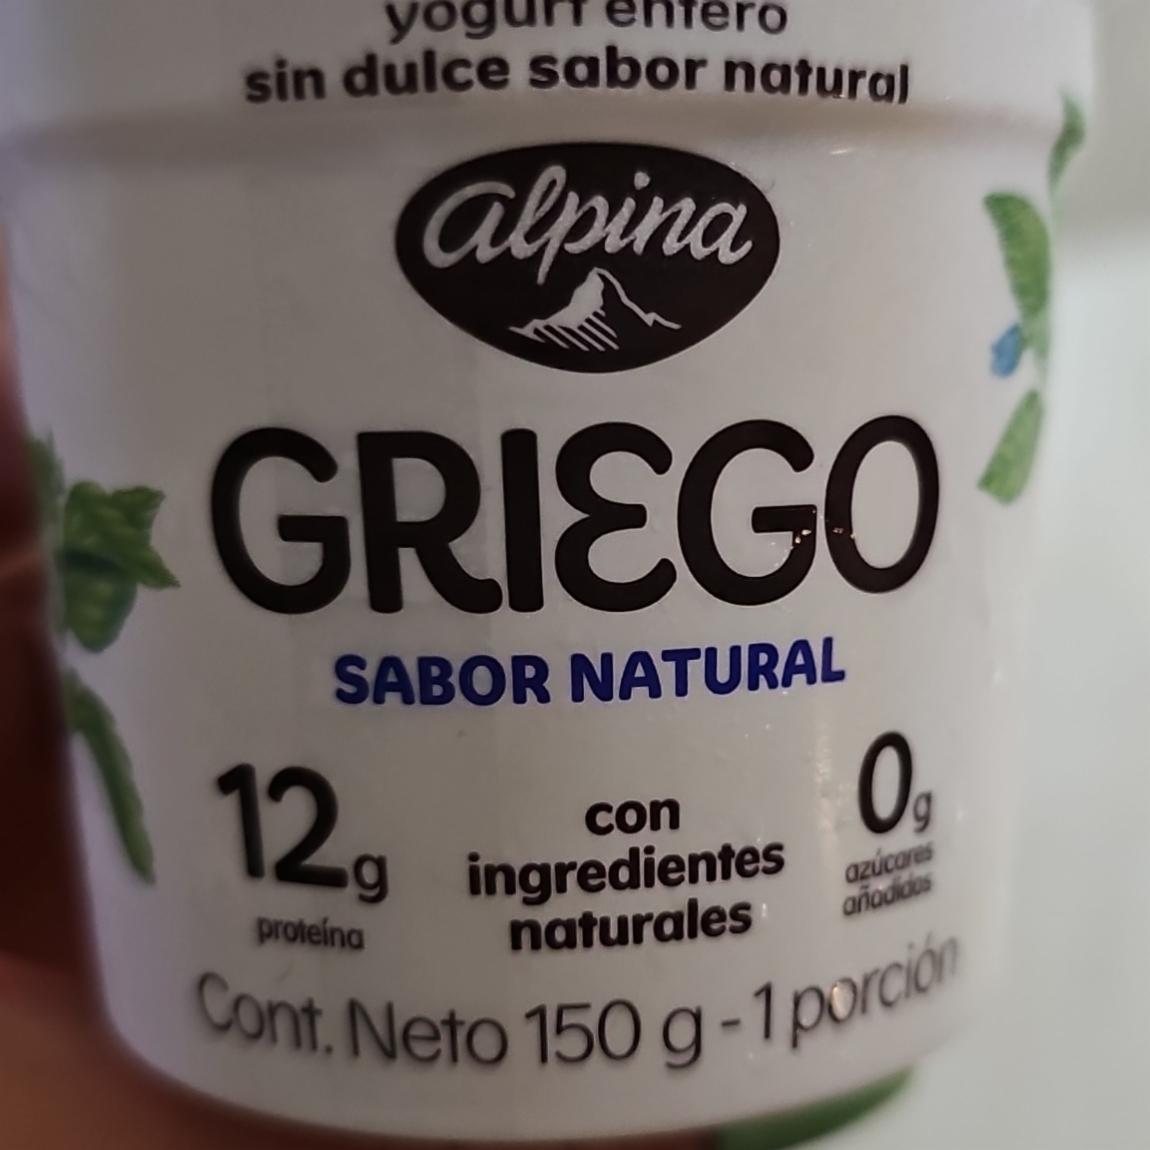 Fotografie - Griego sabor natural Alpina